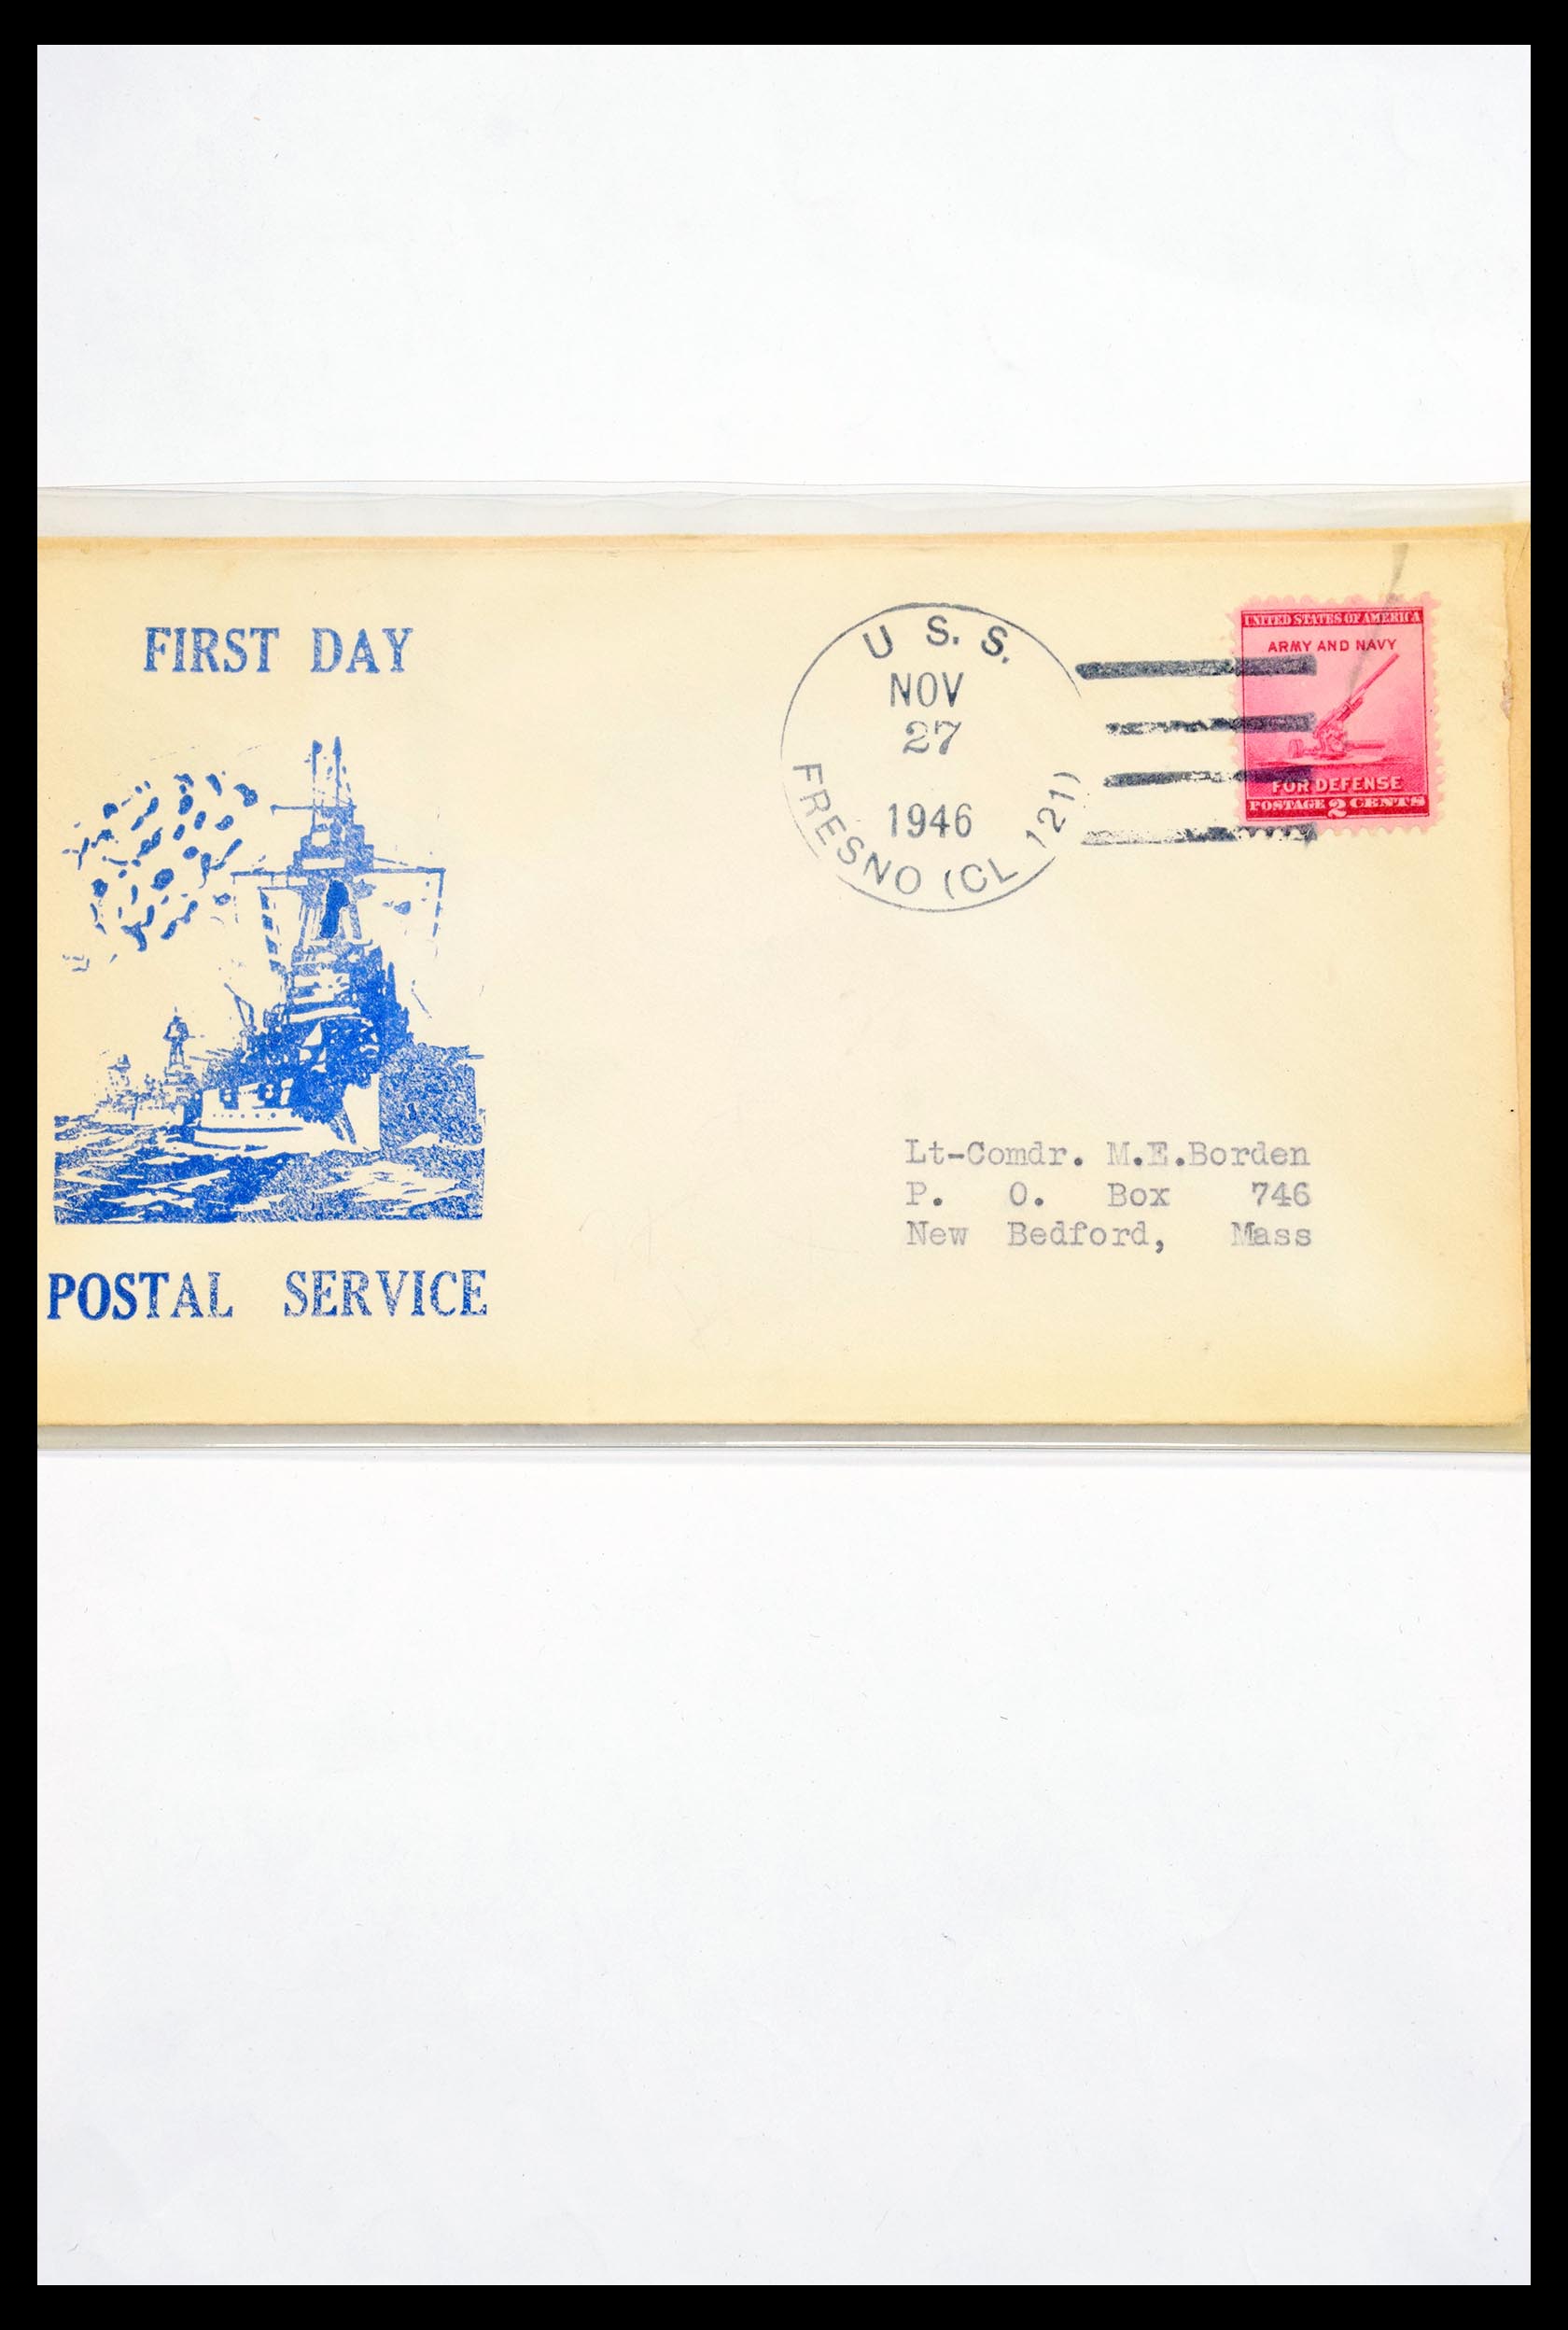 30341 308 - 30341 USA scheepspost brieven 1930-1970.